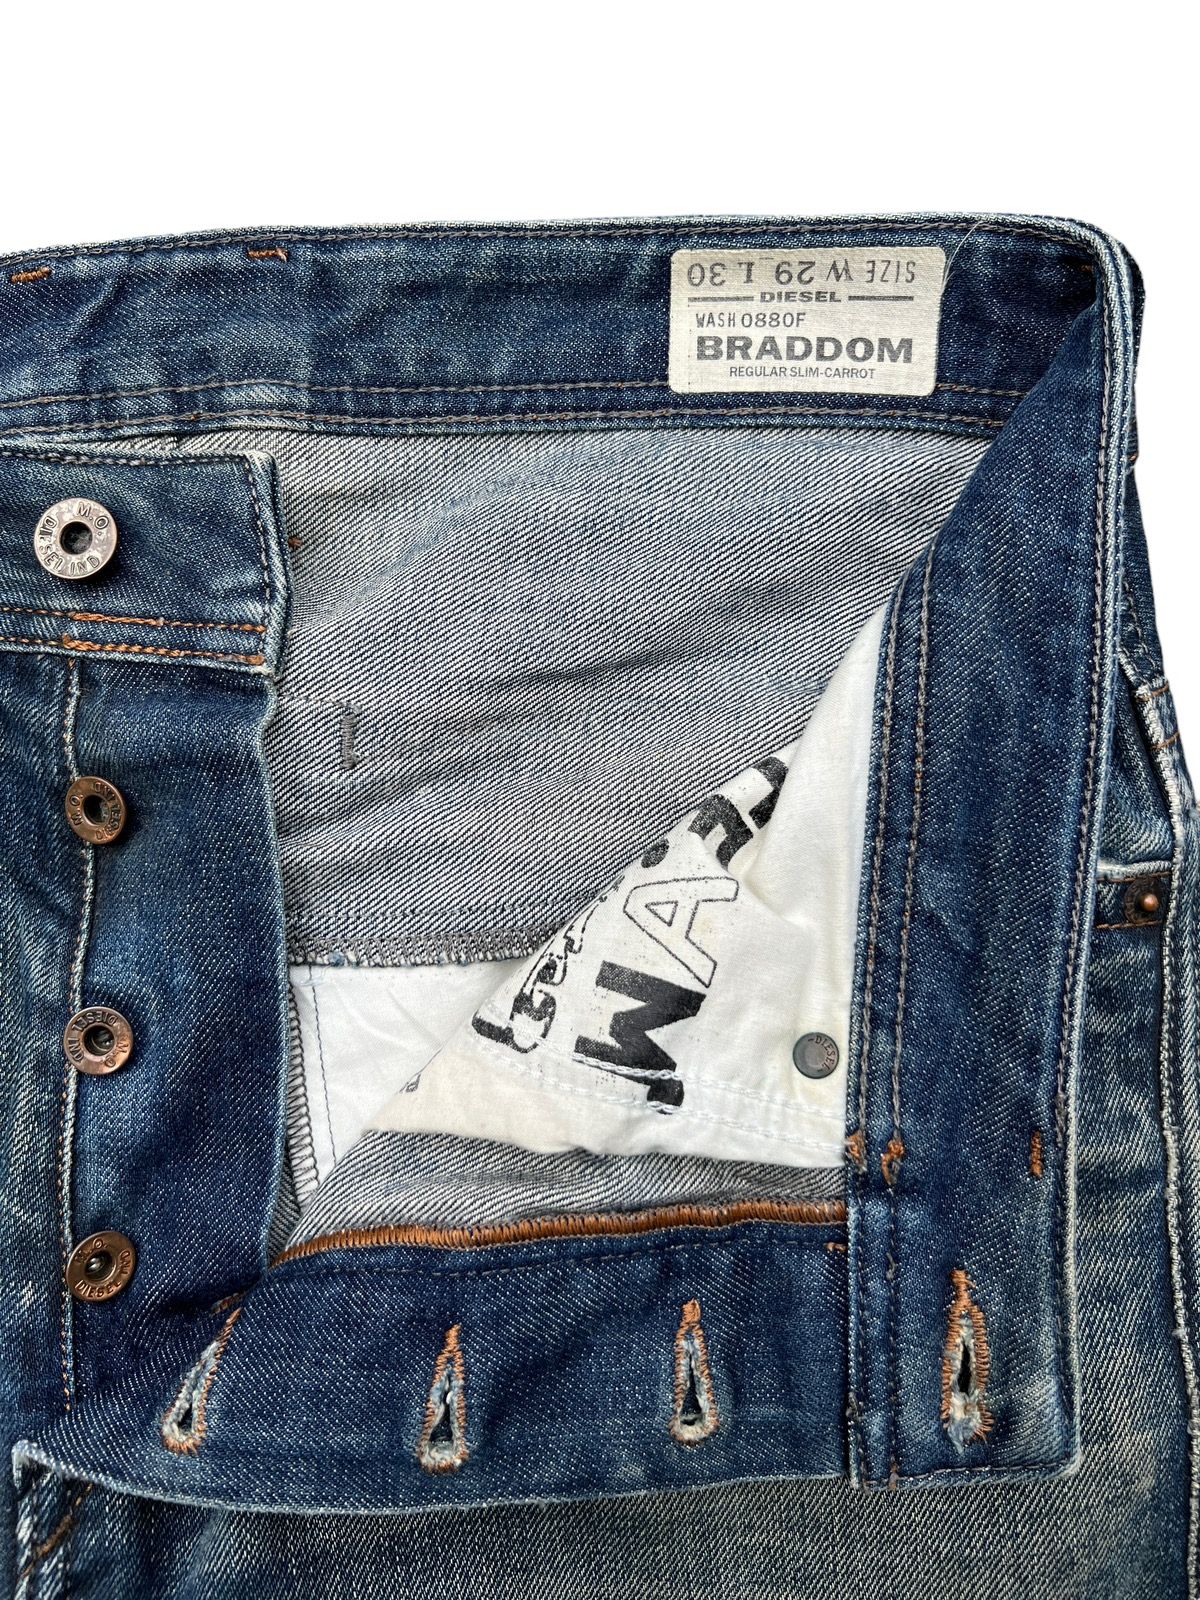 Vintage Diesel Industry Distressed Denim Jeans 32x31 - 10